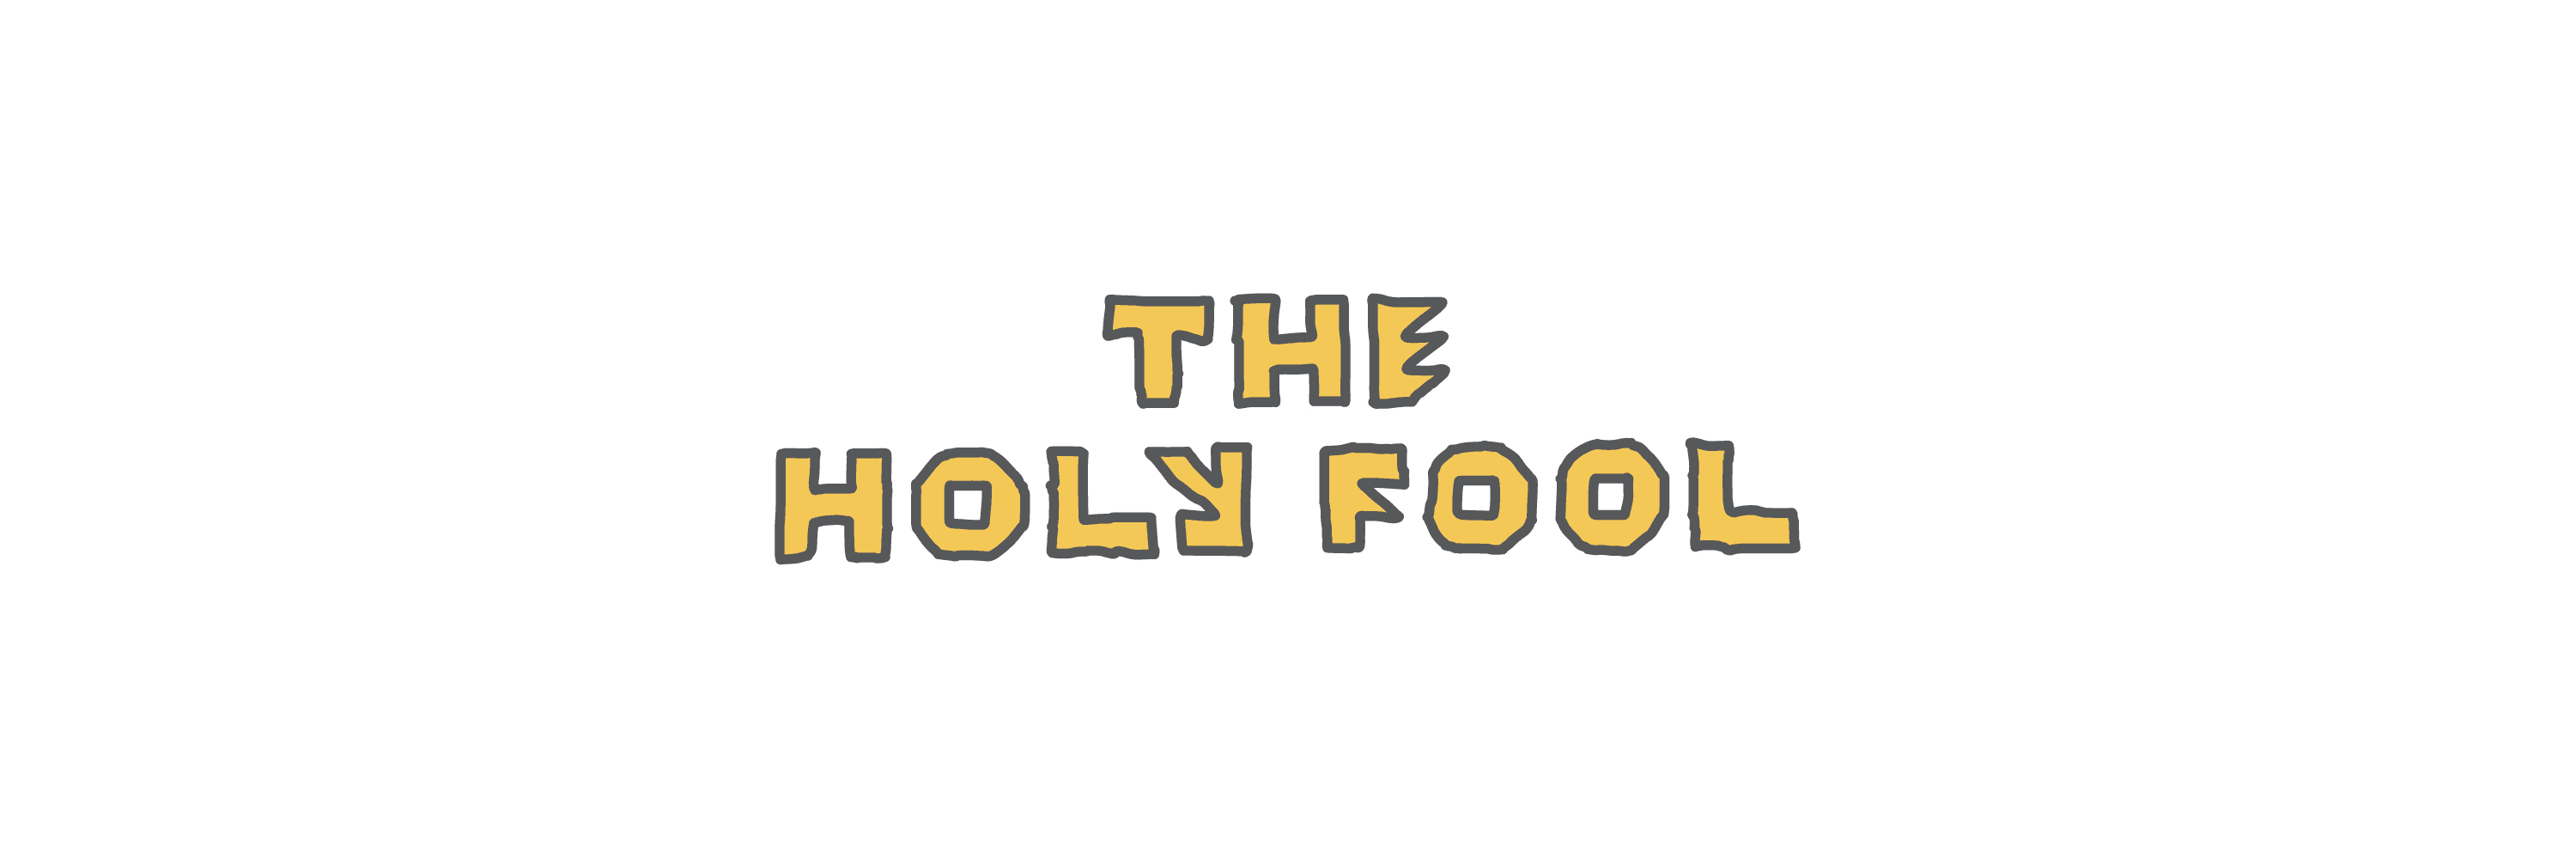 TheHolyFool バナー